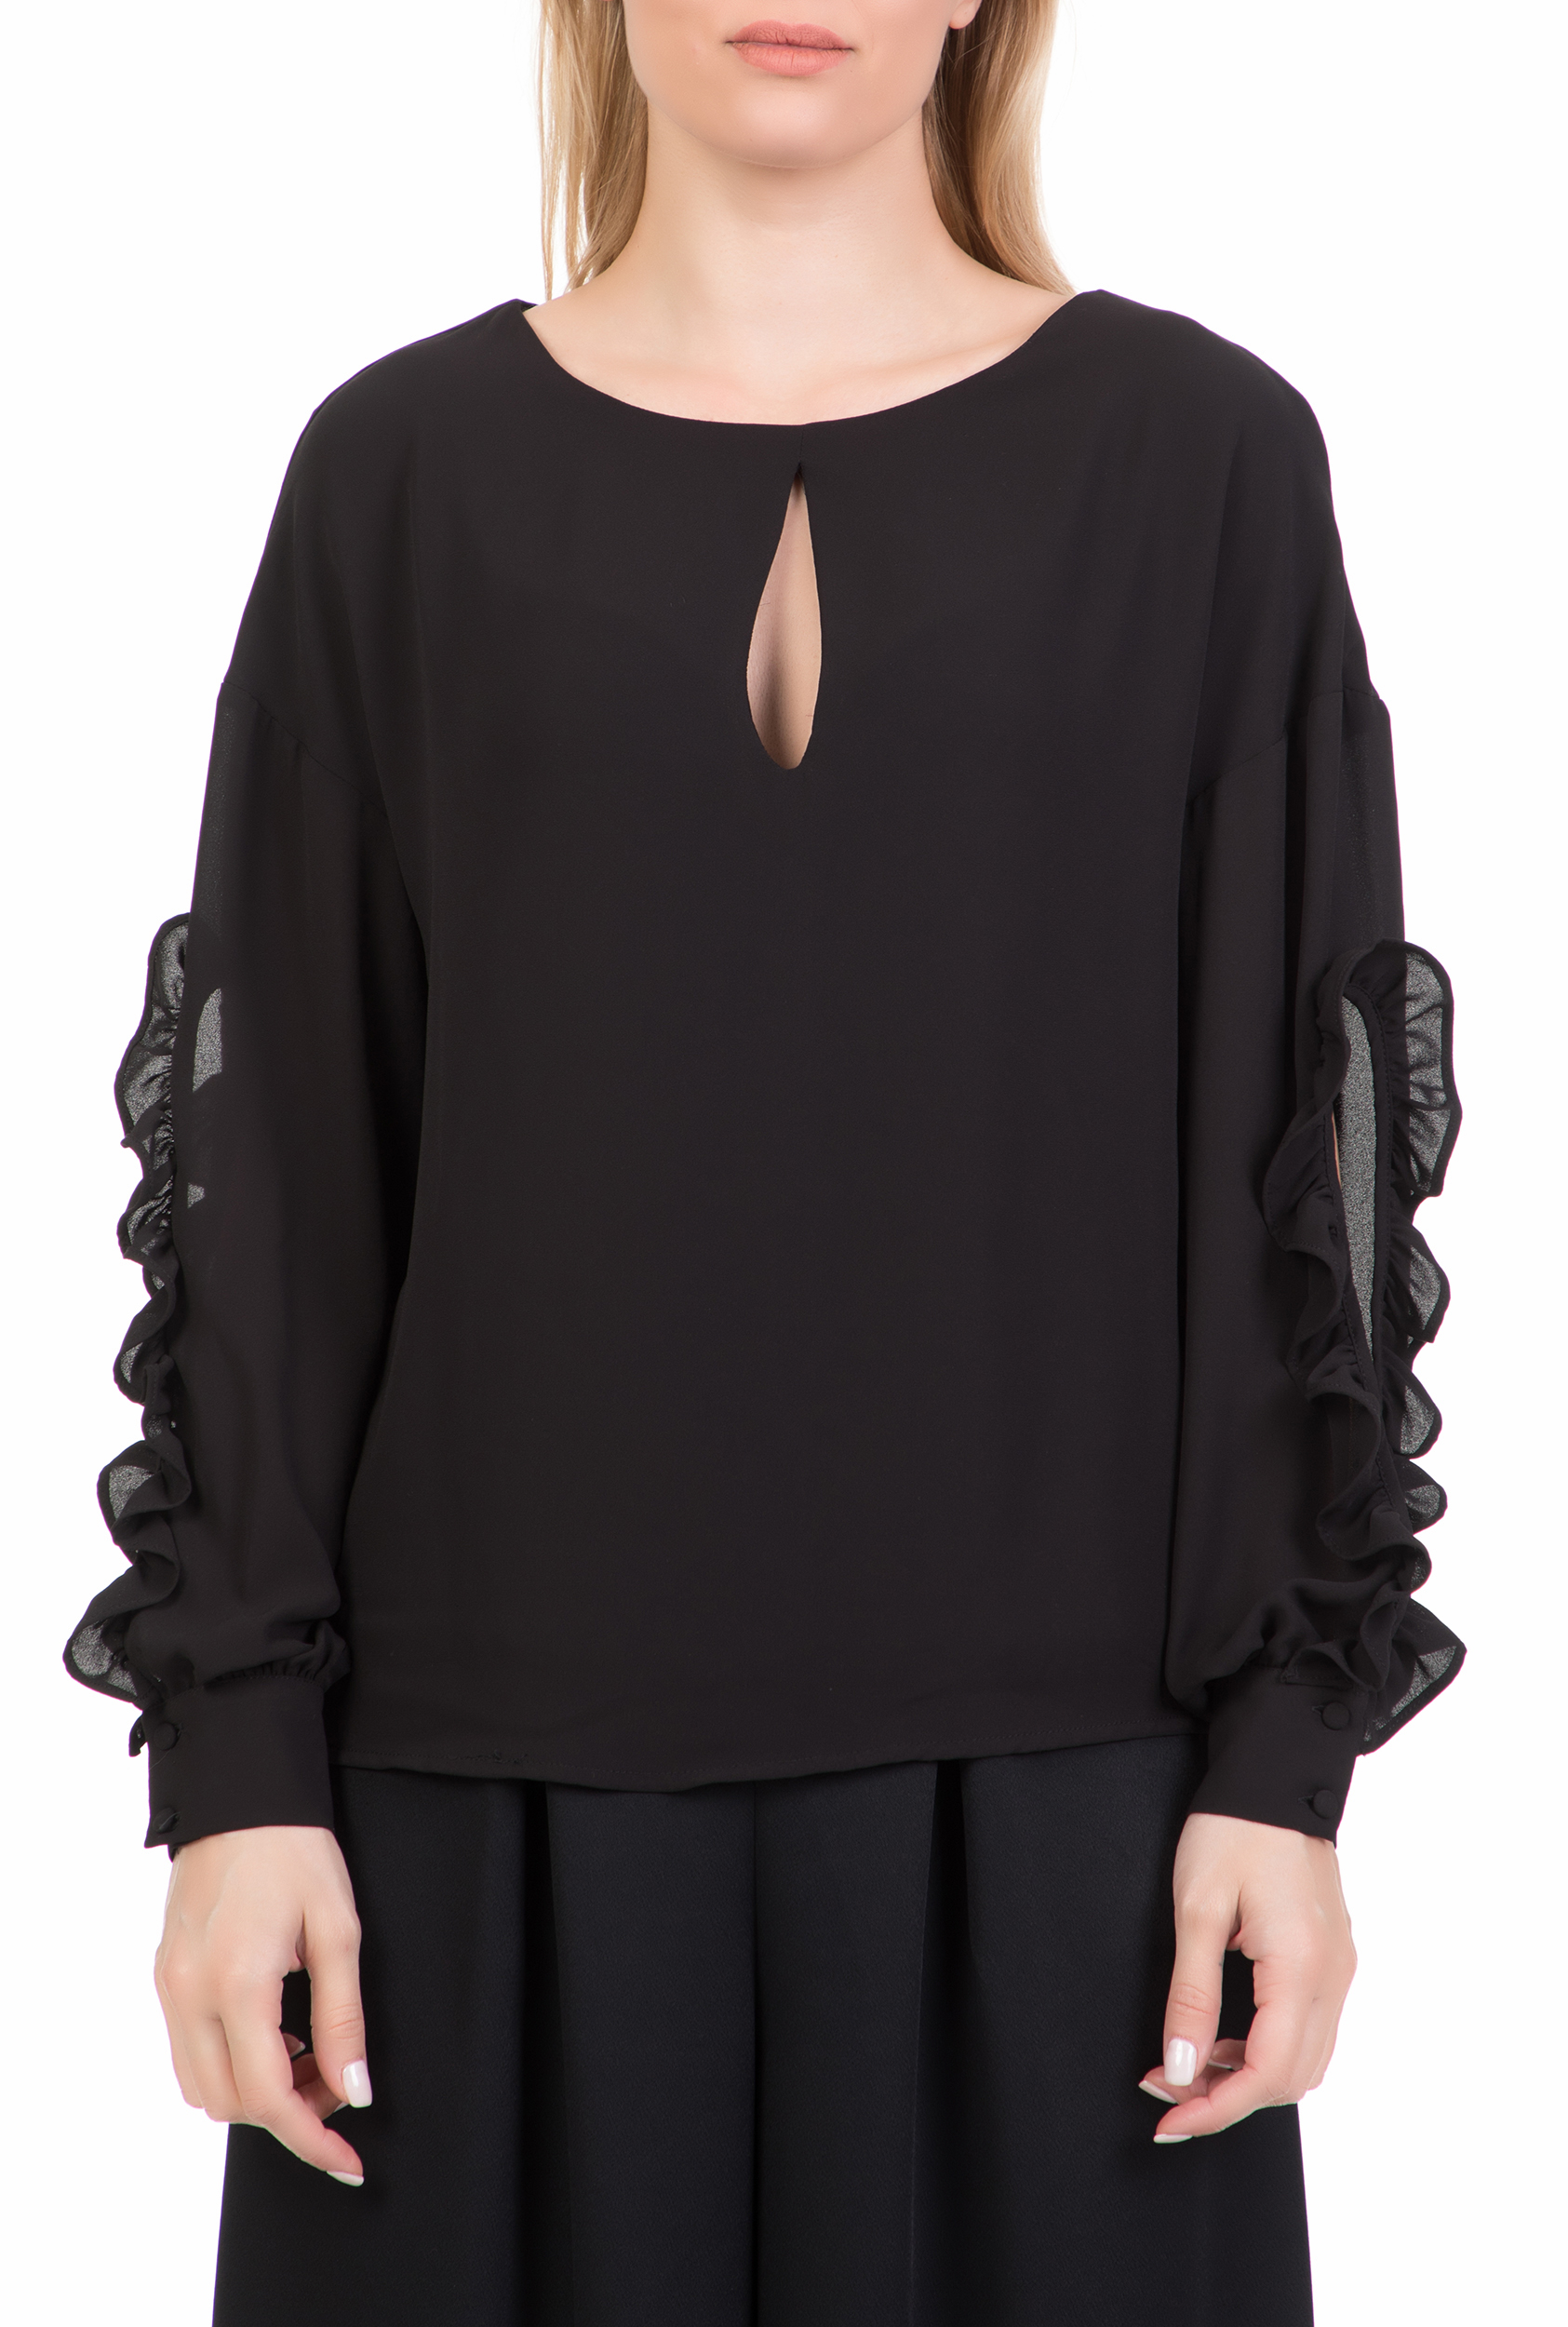 Γυναικεία/Ρούχα/Μπλούζες/Μακρυμάνικες GUESS - Γυναικεία μακρυμάνικη μπλούζα GUESS ADOLFINA μαύρη